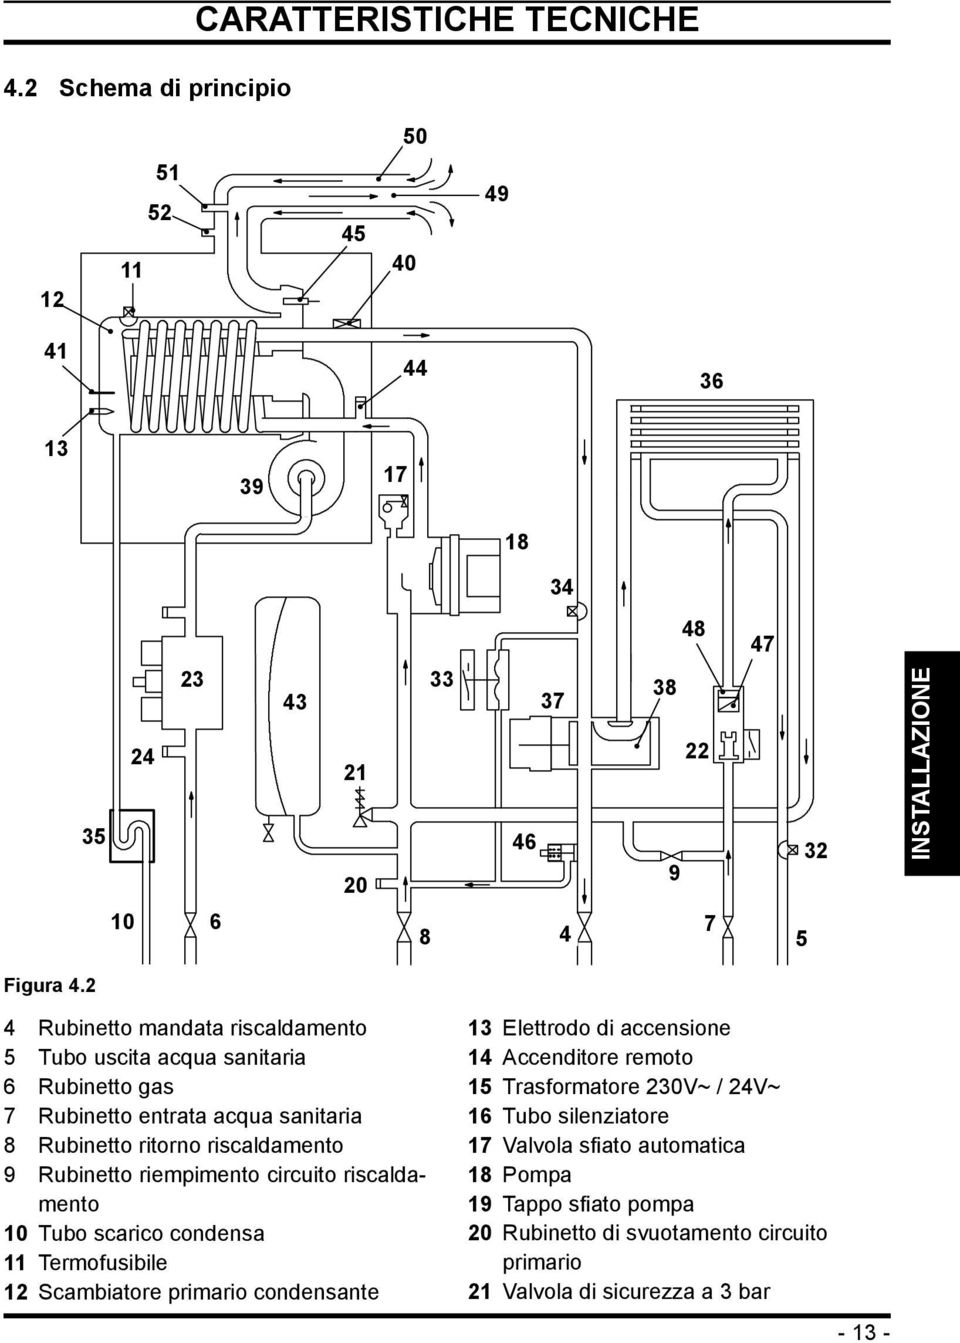 riempimento circuito riscaldamento 10 Tubo scarico condensa 11 Termofusibile 12 Scambiatore primario condensante 13 Elettrodo di accensione 14 Accenditore remoto 15